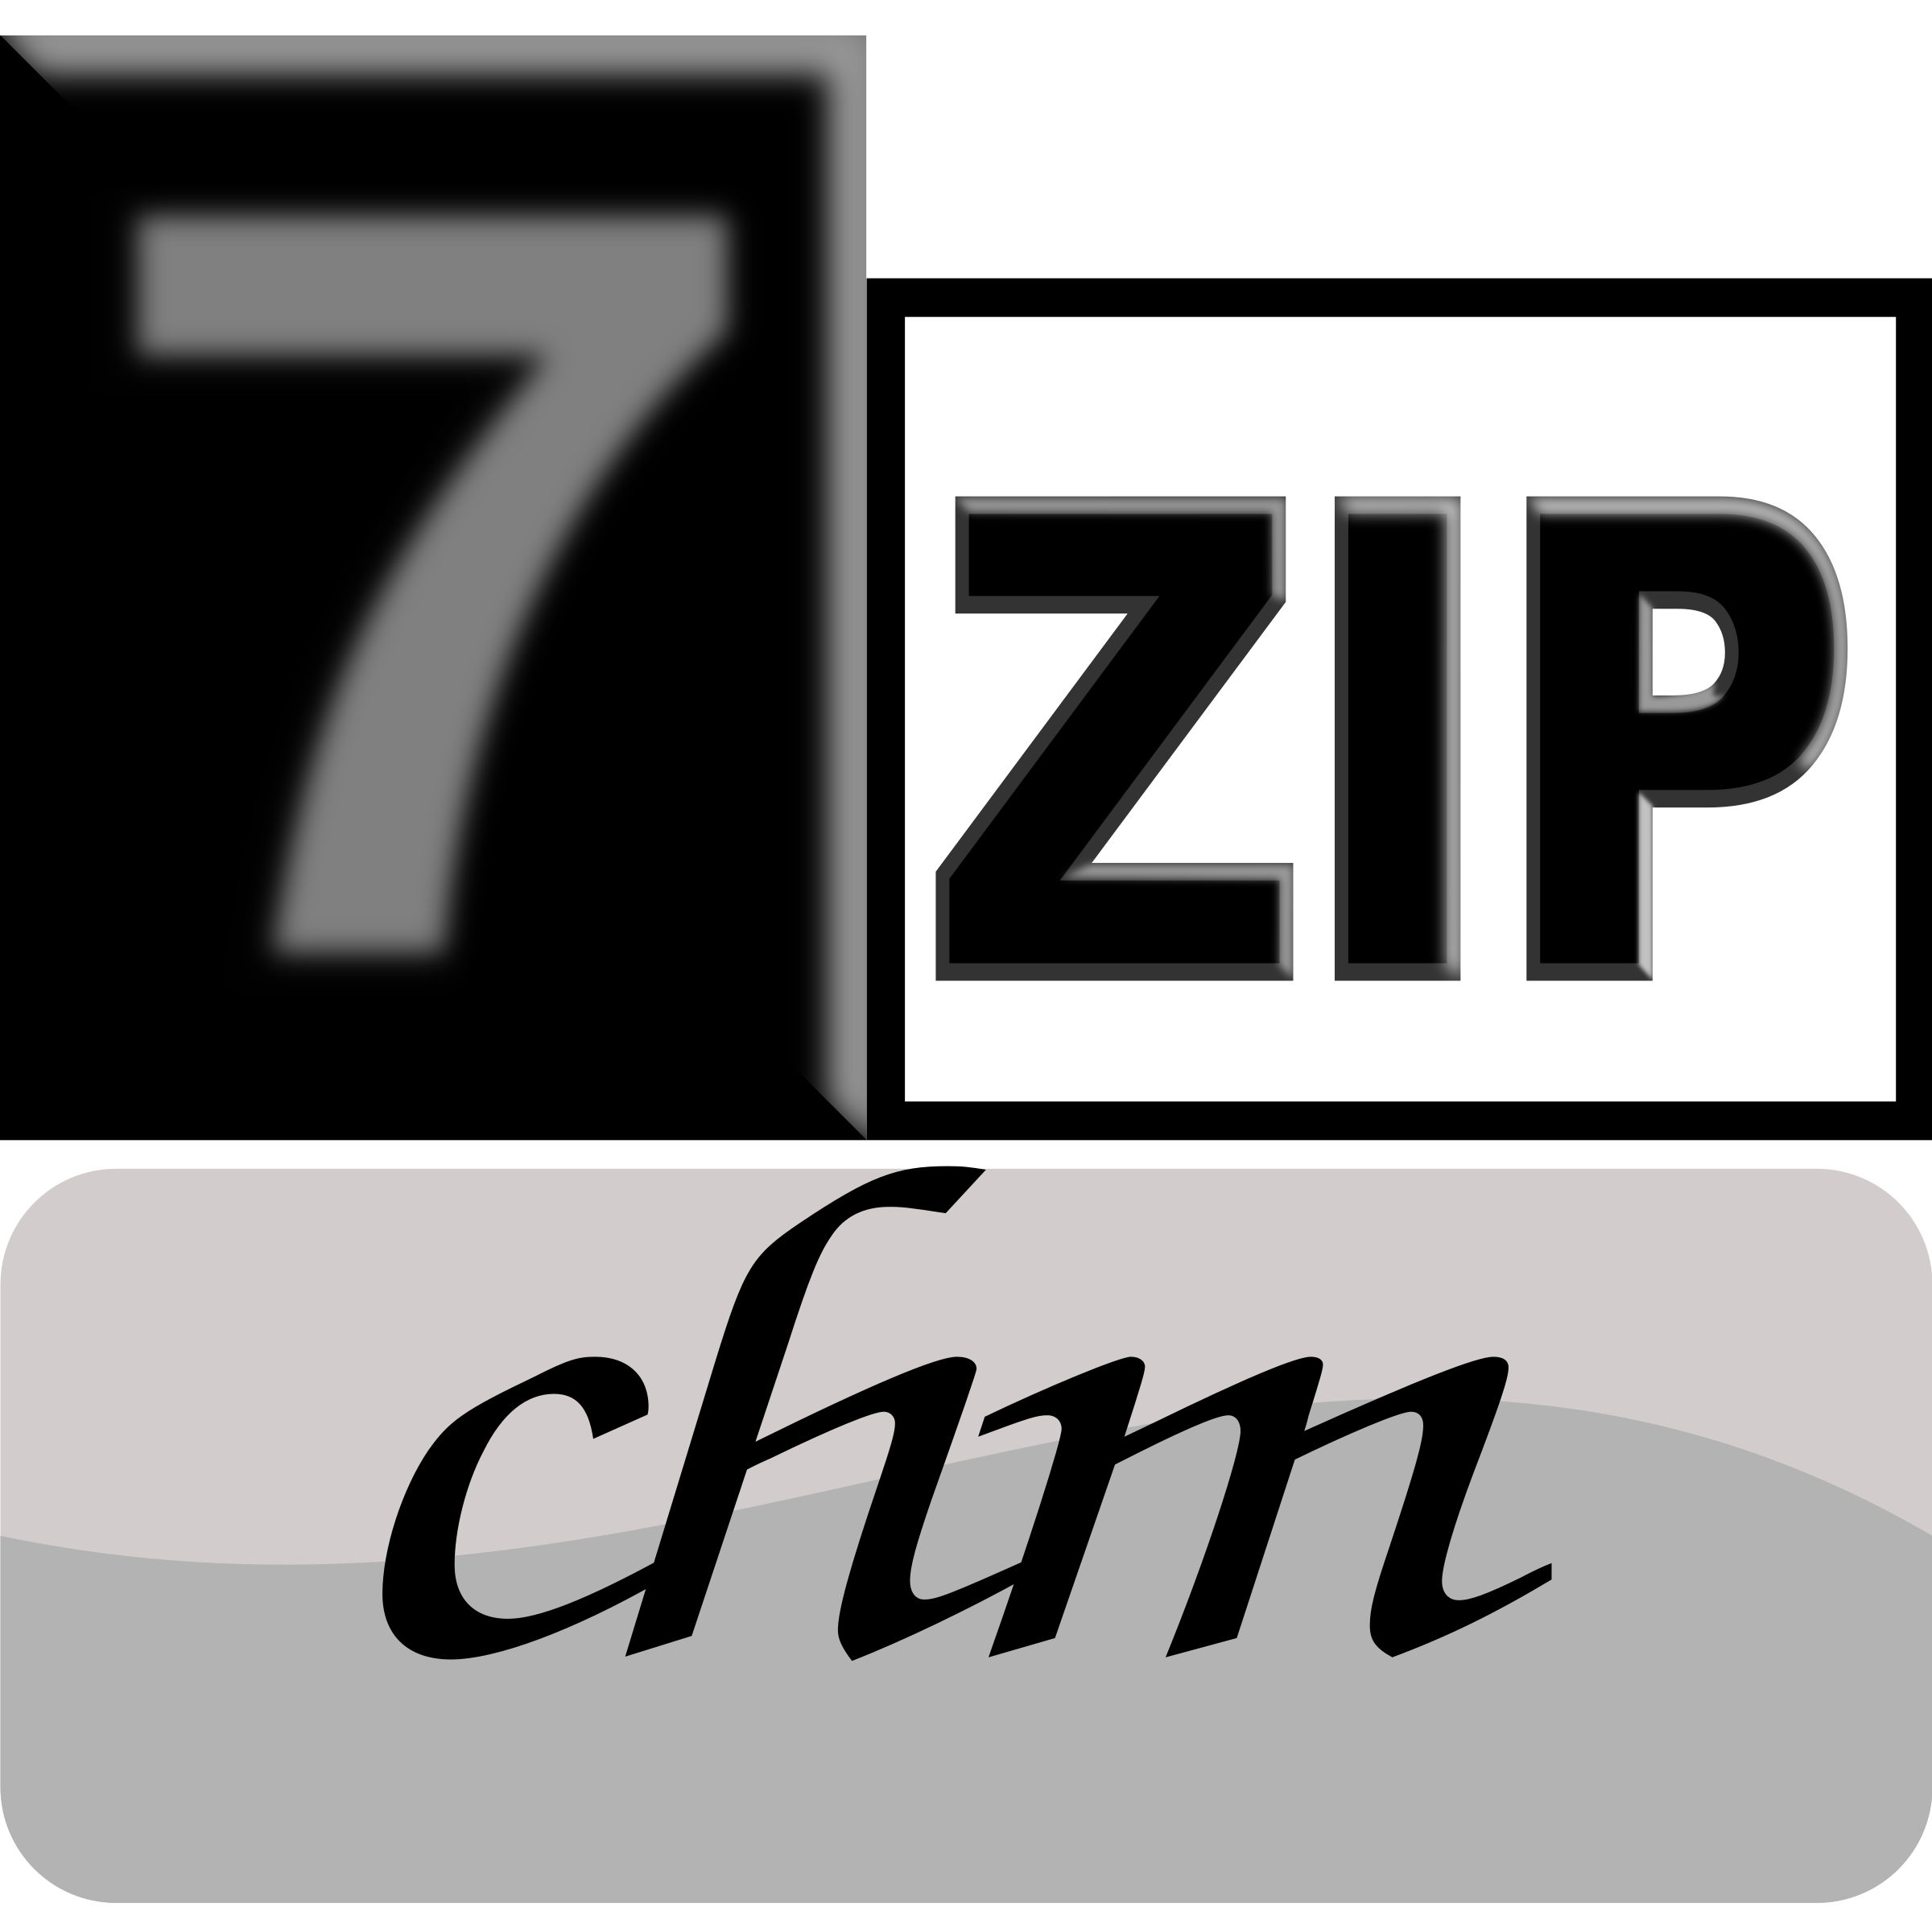 7zipClassic-chm Clip arts